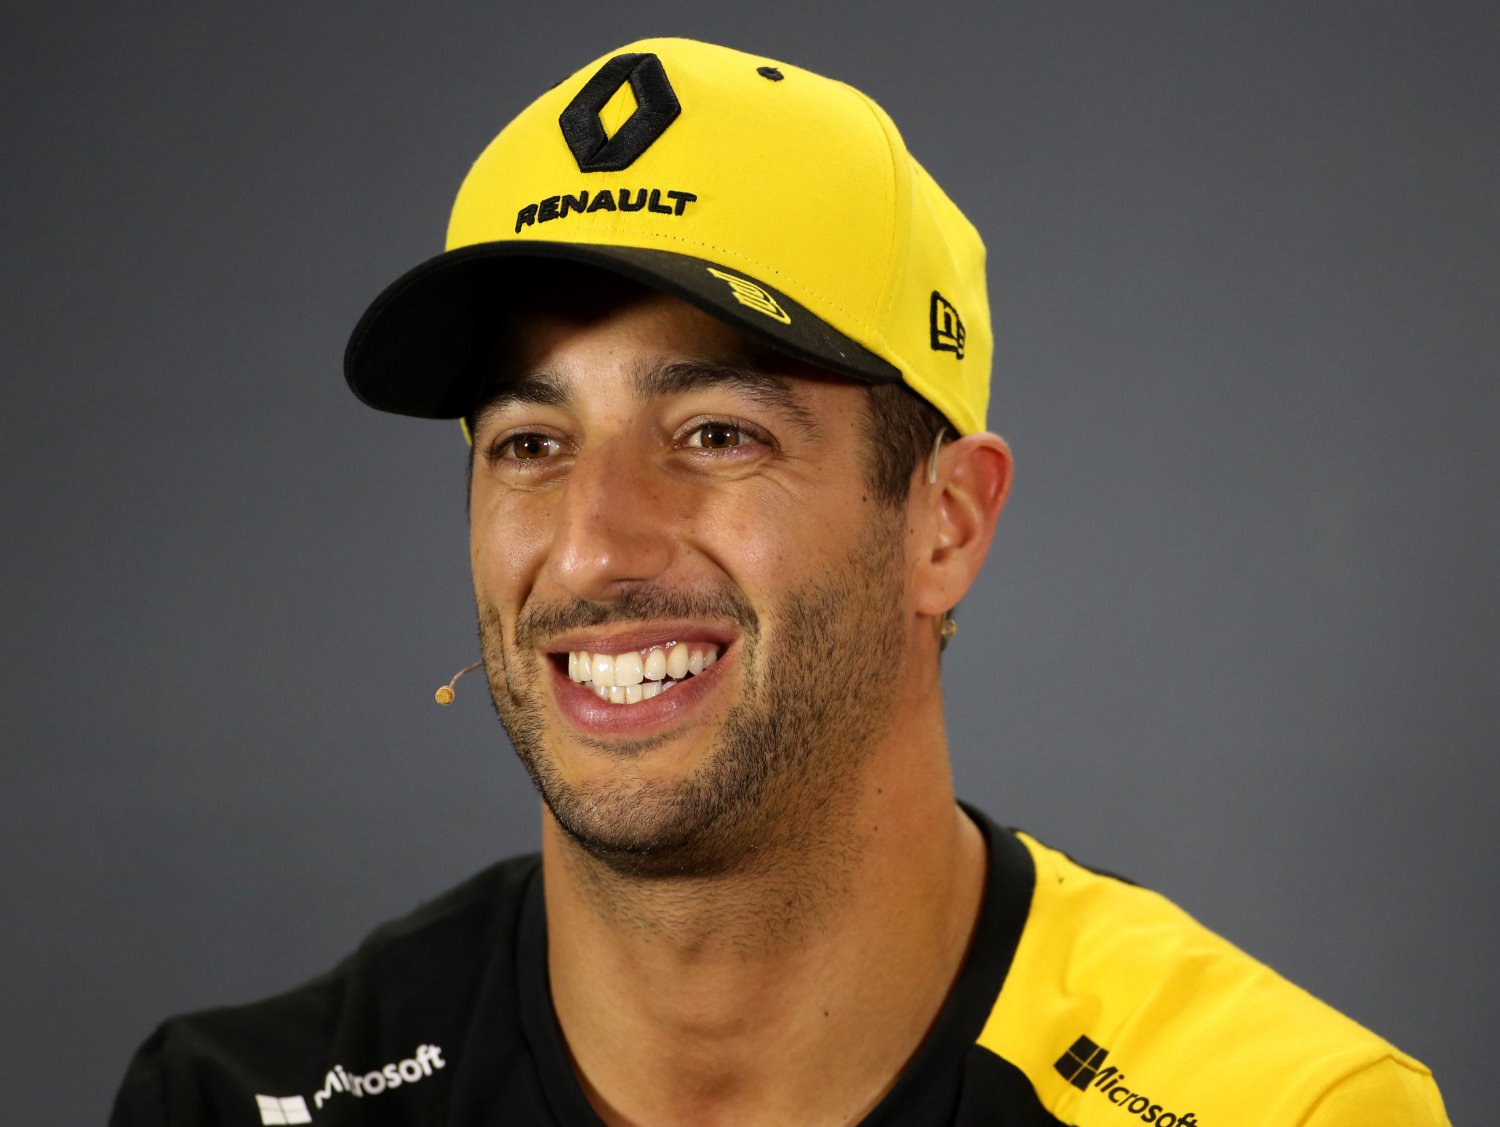 Daiel Ricciardo